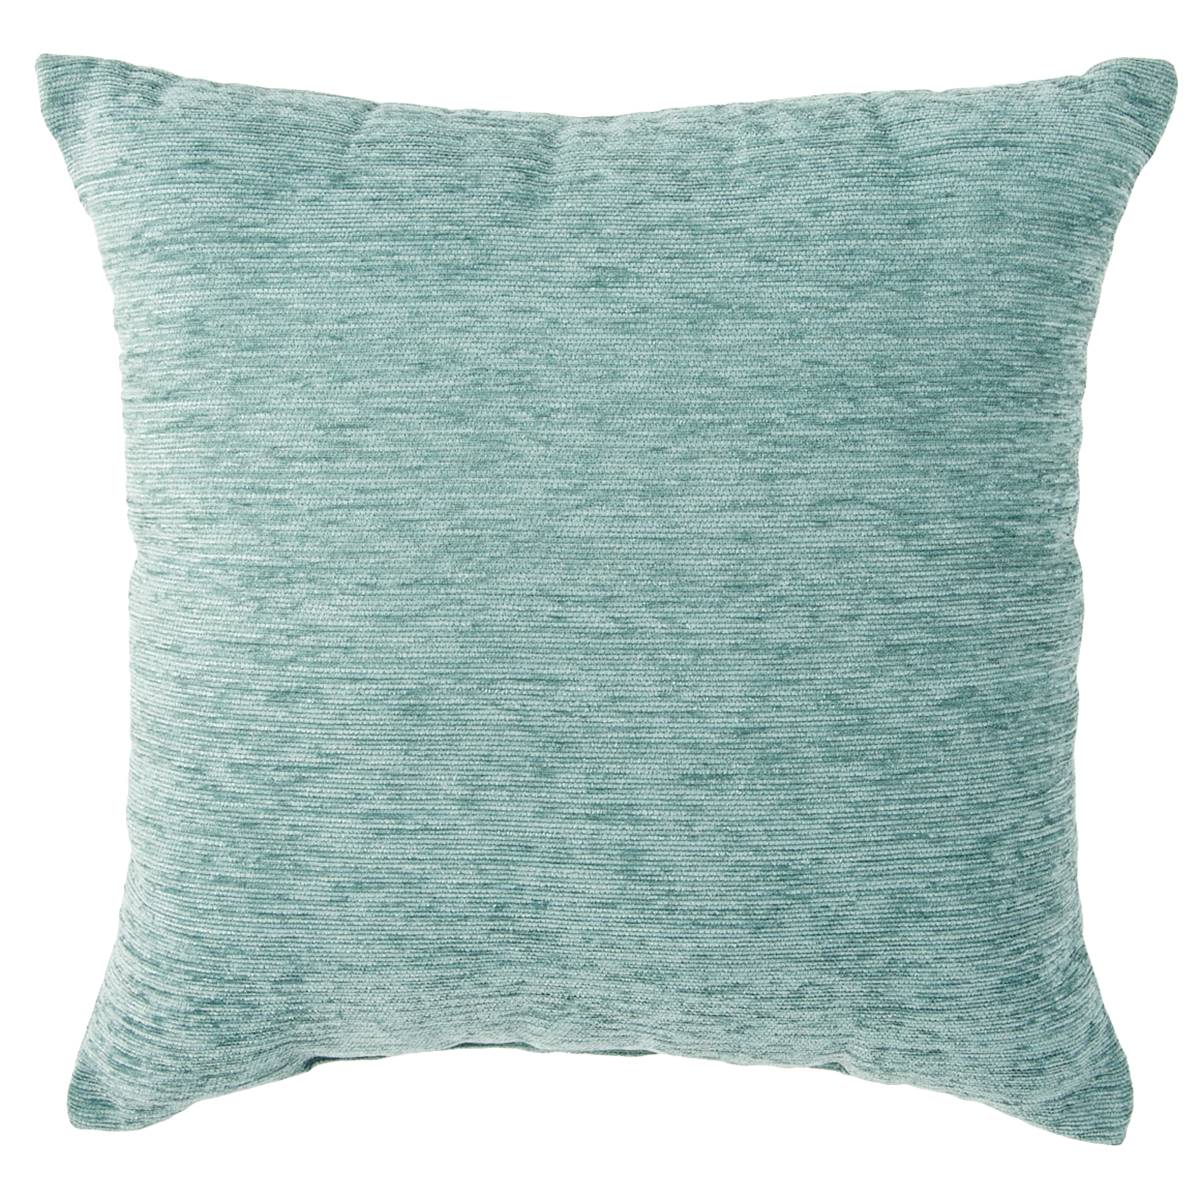 Chenille Decorative Pillow - 17x17